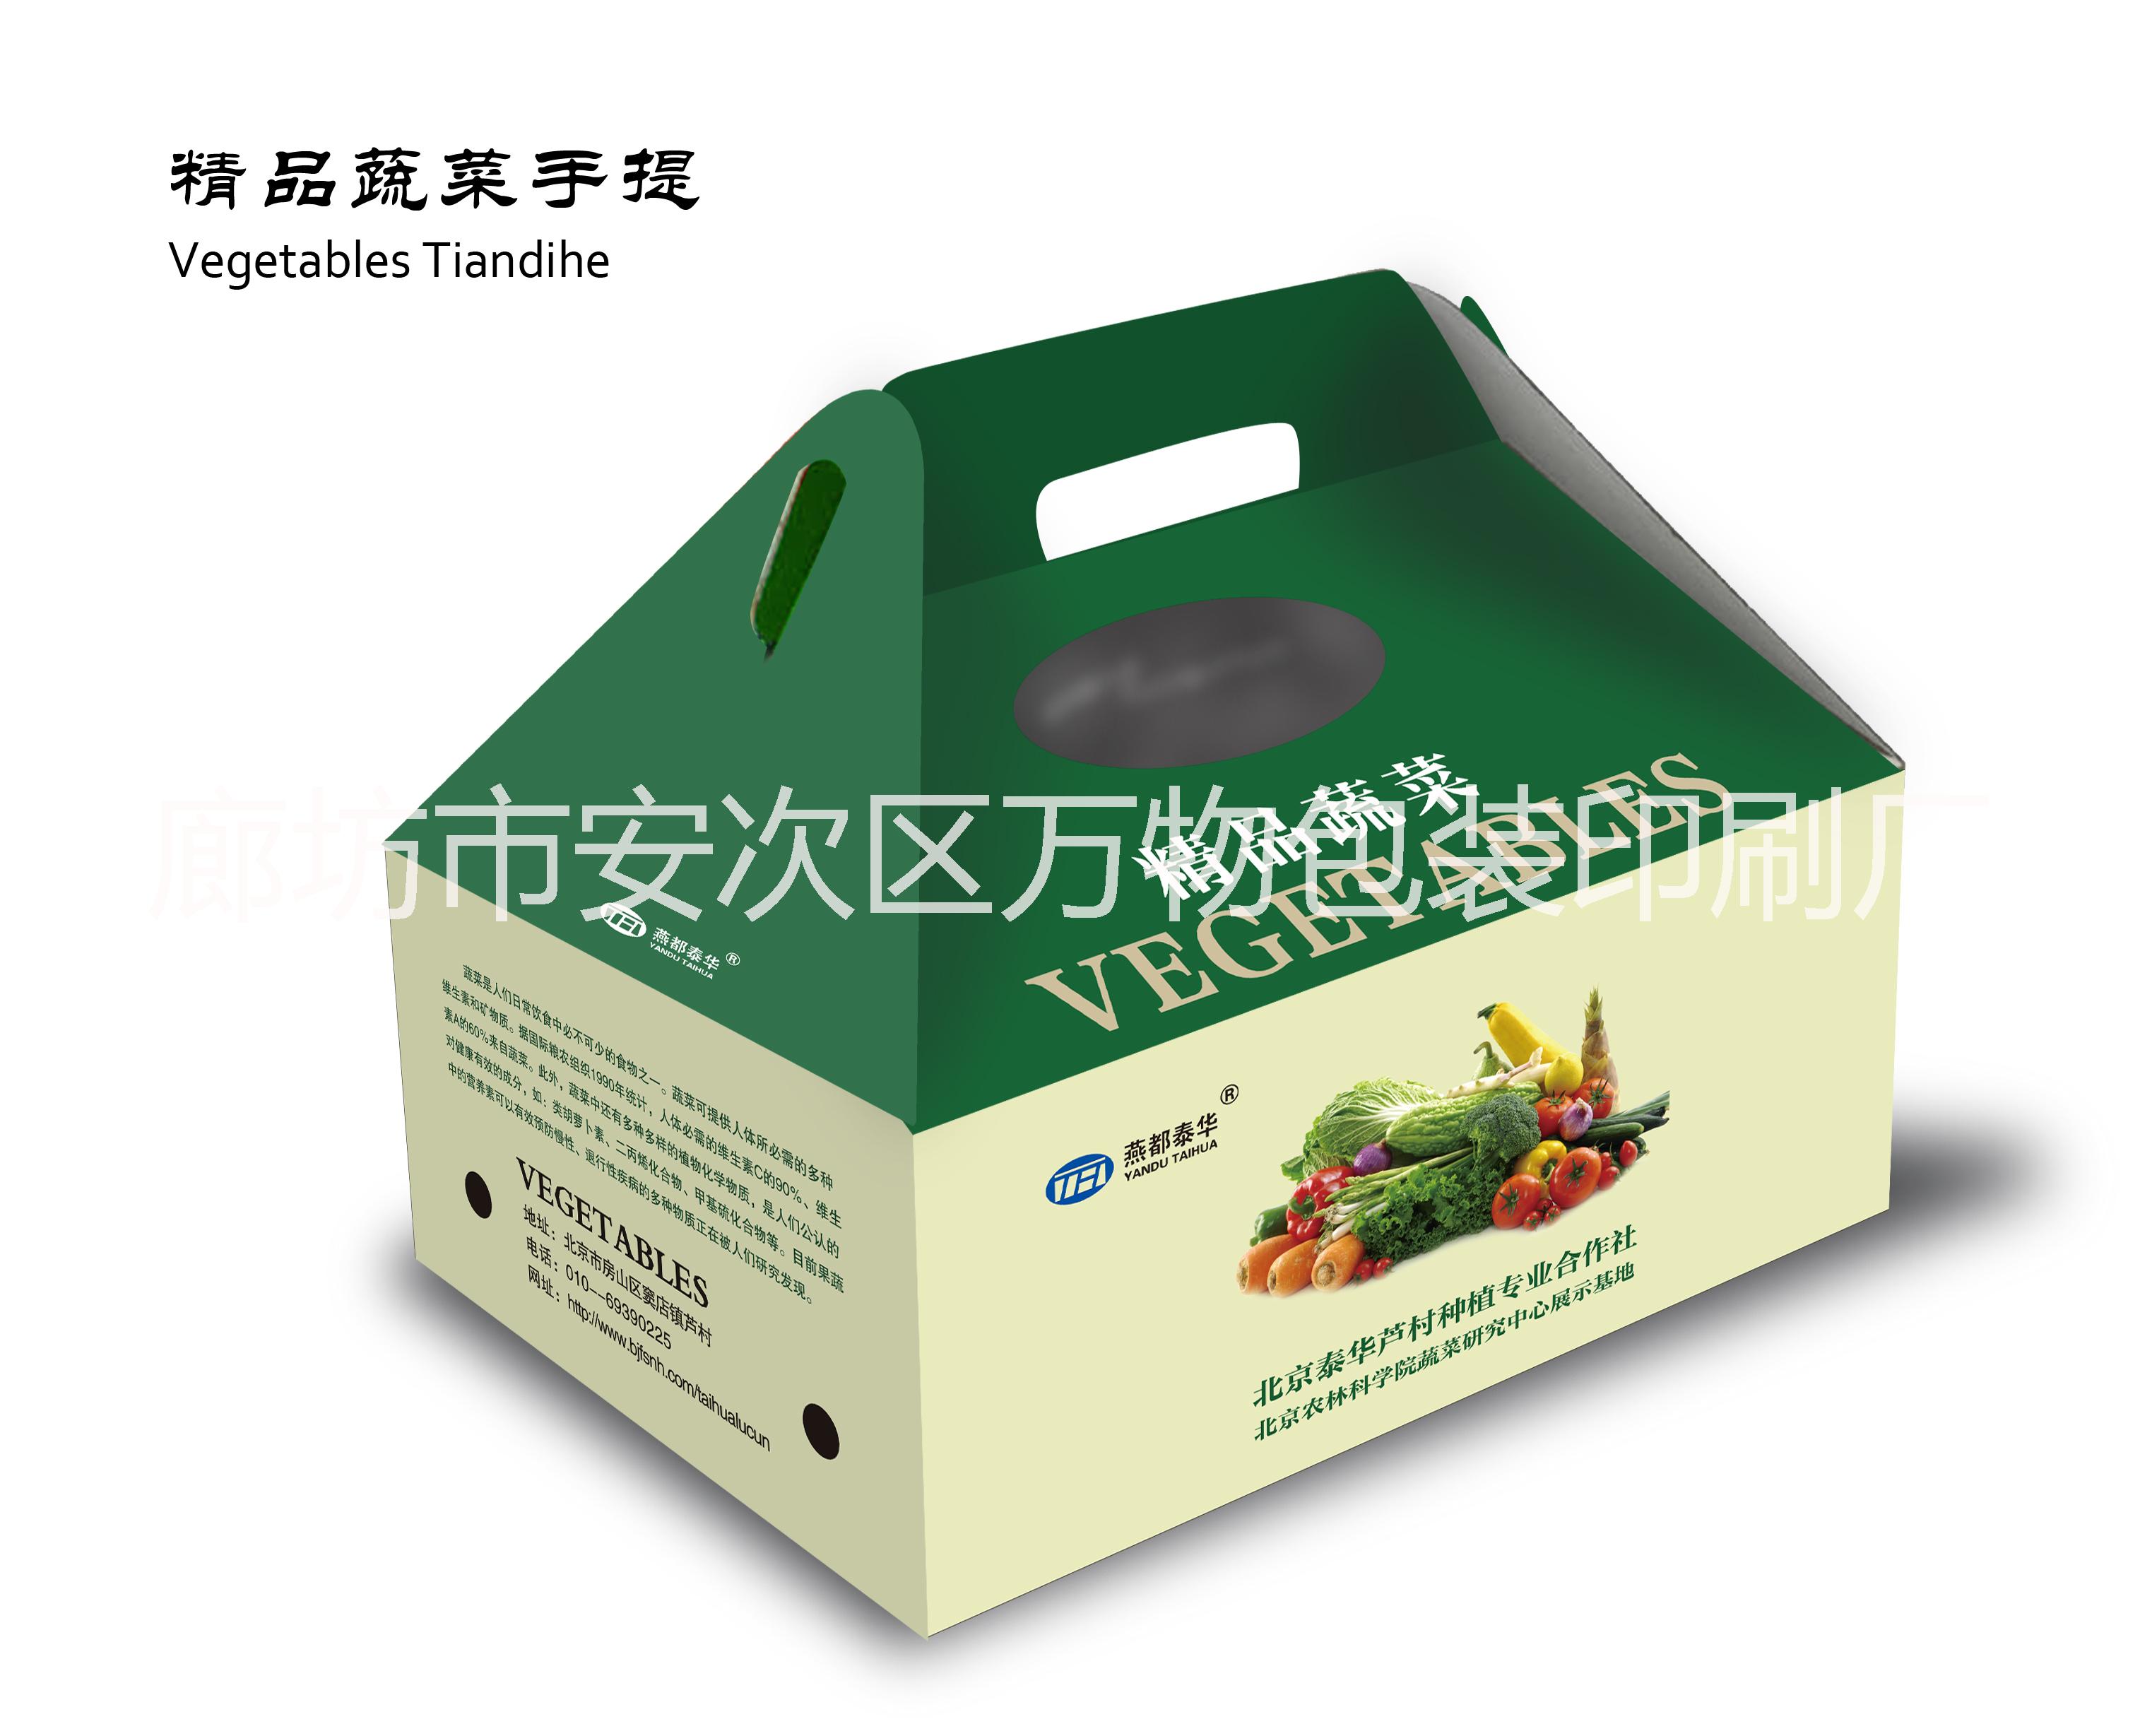 蔬菜水果礼盒蔬菜水果礼盒价格蔬菜水果礼盒供应商蔬菜水果包装盒批发